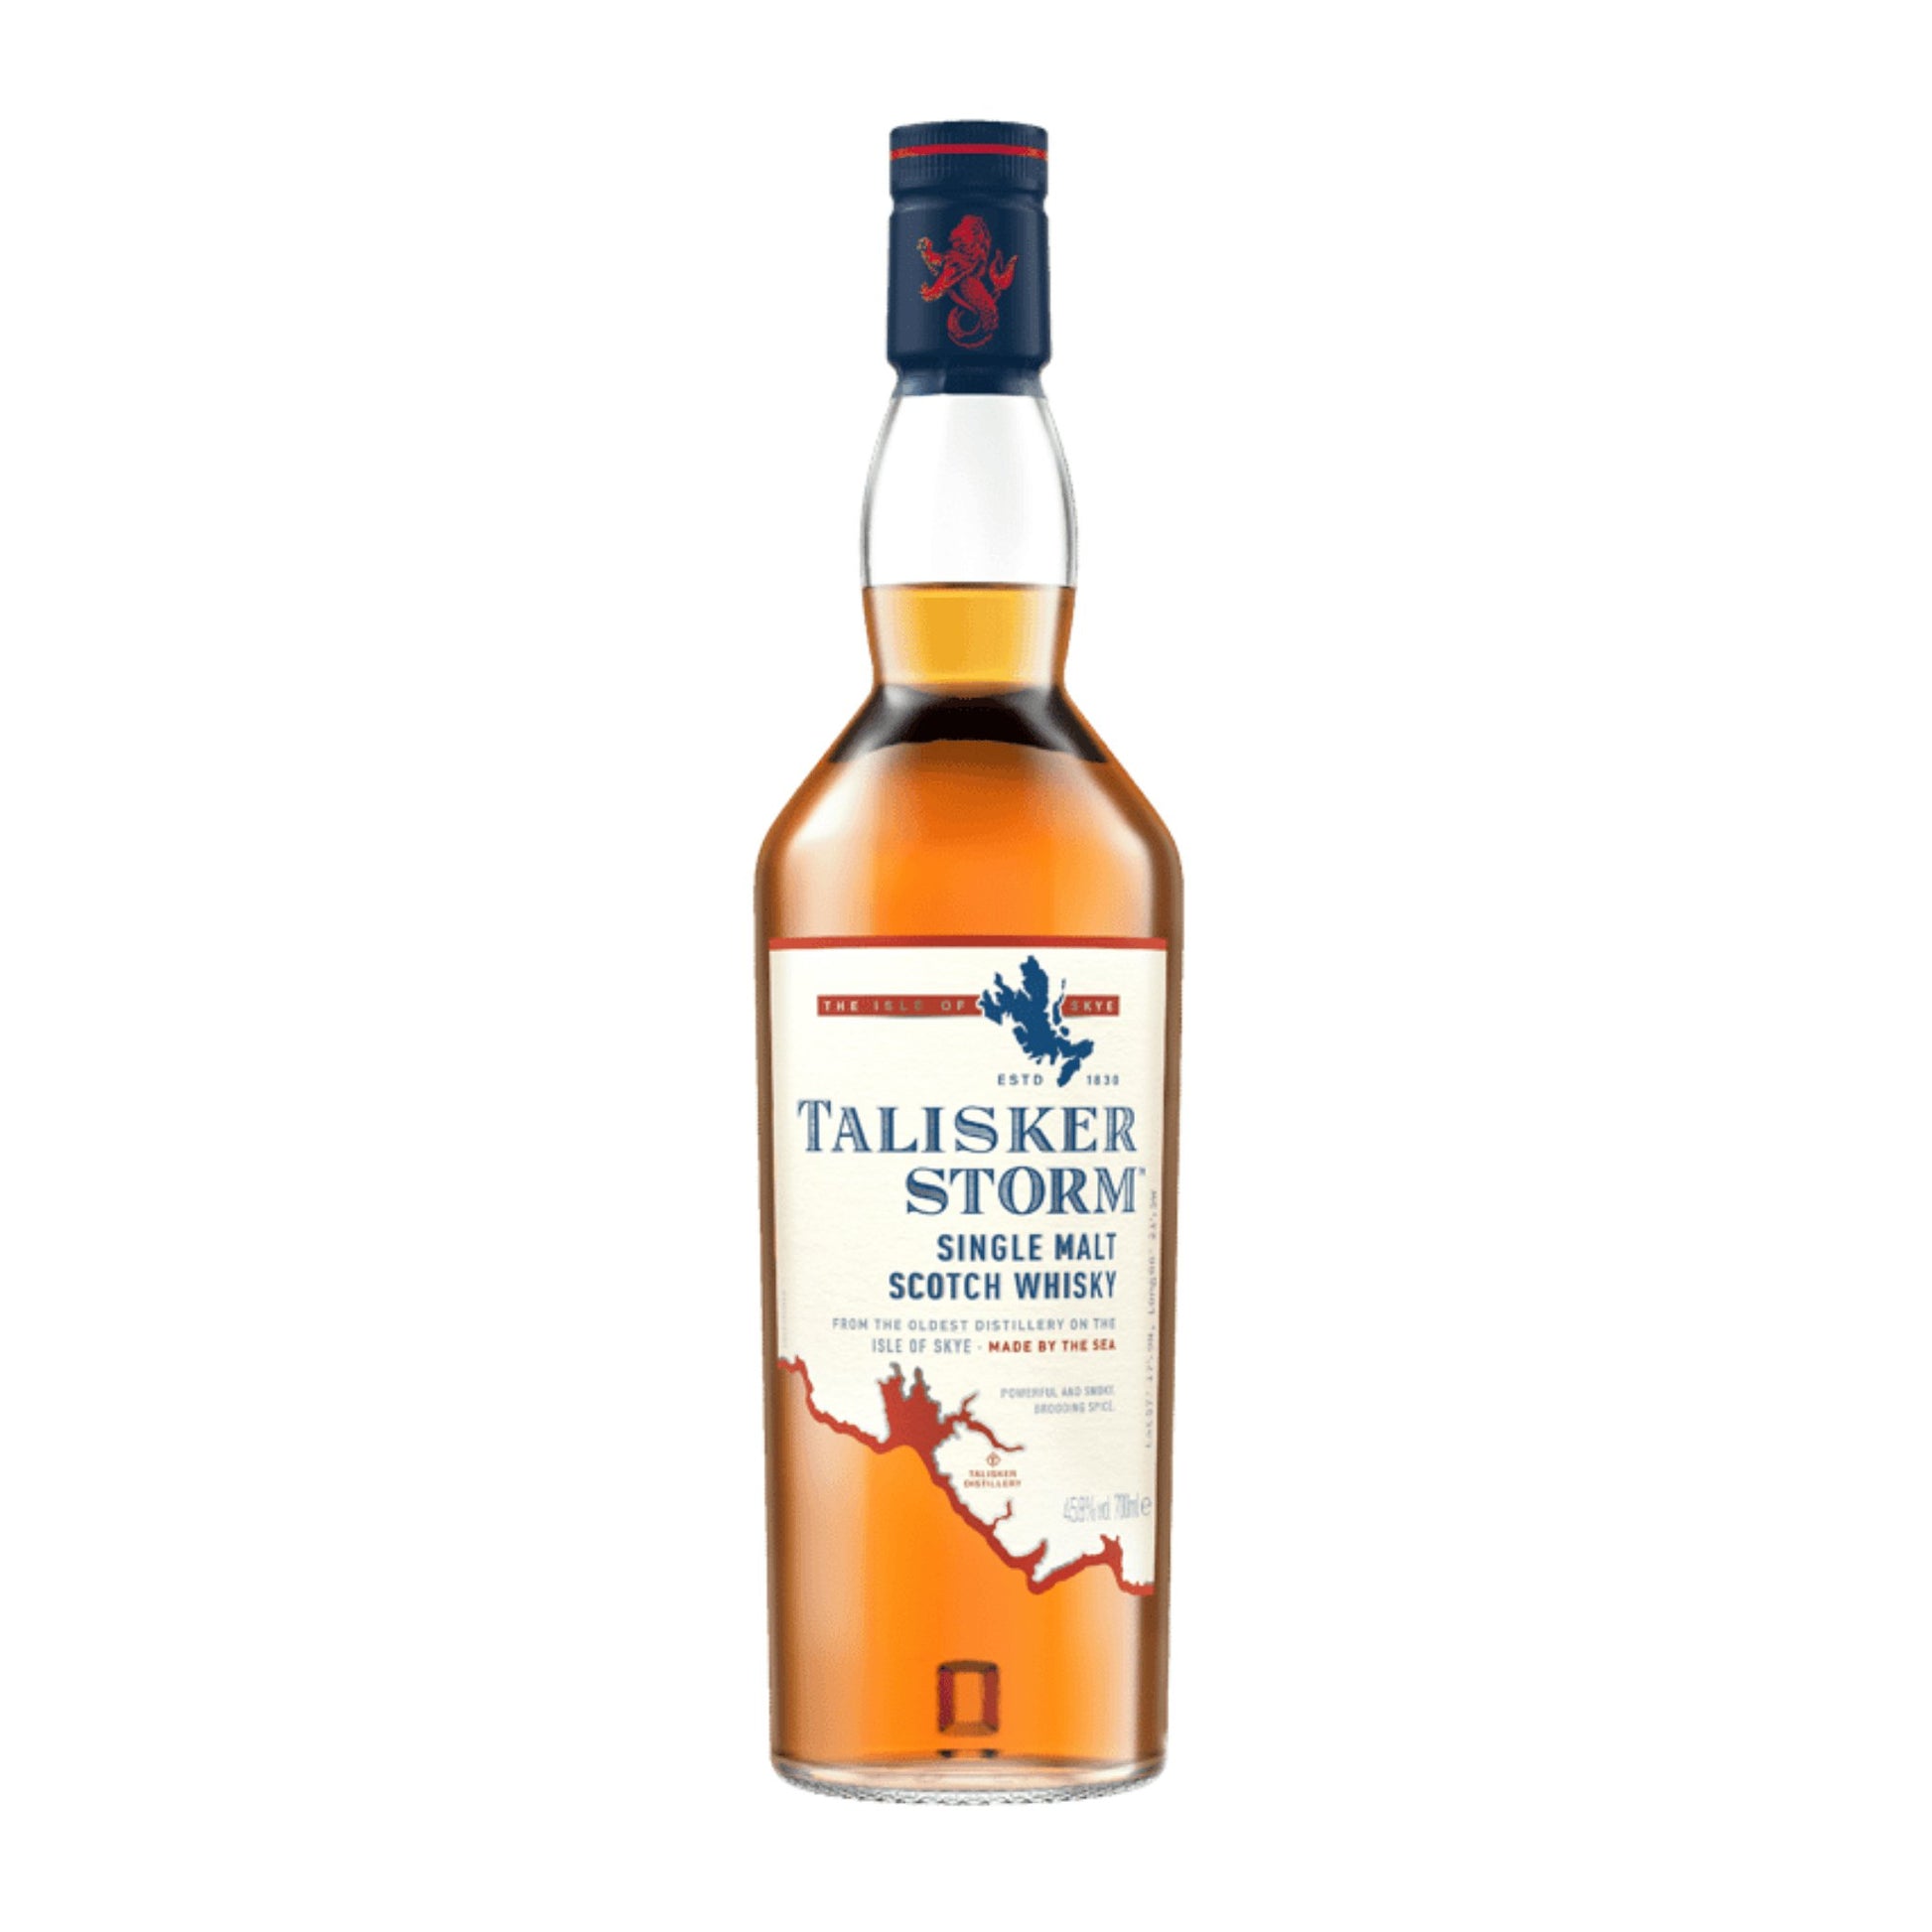 Talisker Storm Scotch Whisky 700mL - Booze House